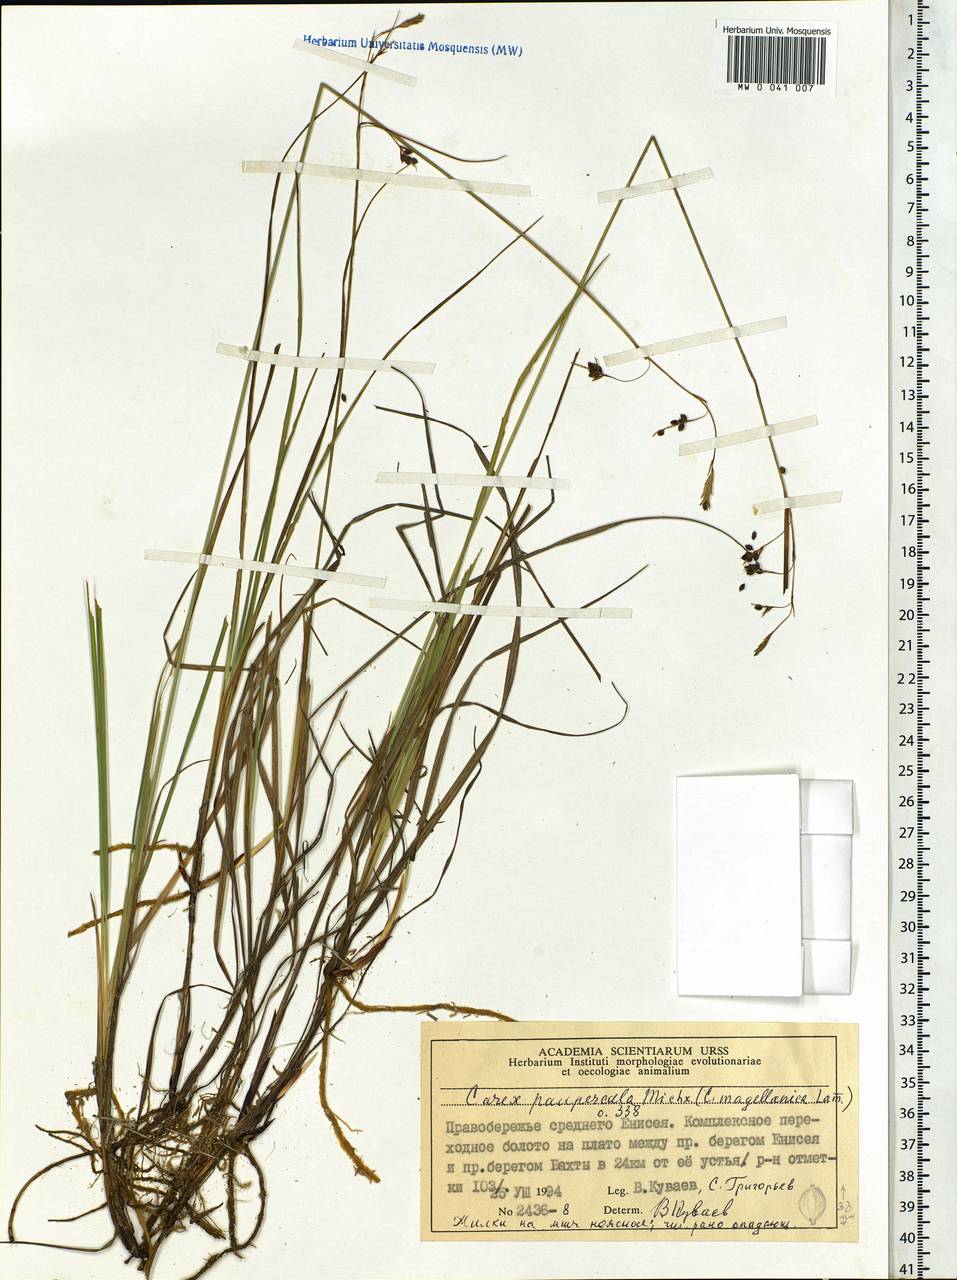 Carex magellanica subsp. irrigua (Wahlenb.) Hiitonen, Siberia, Central Siberia (S3) (Russia)